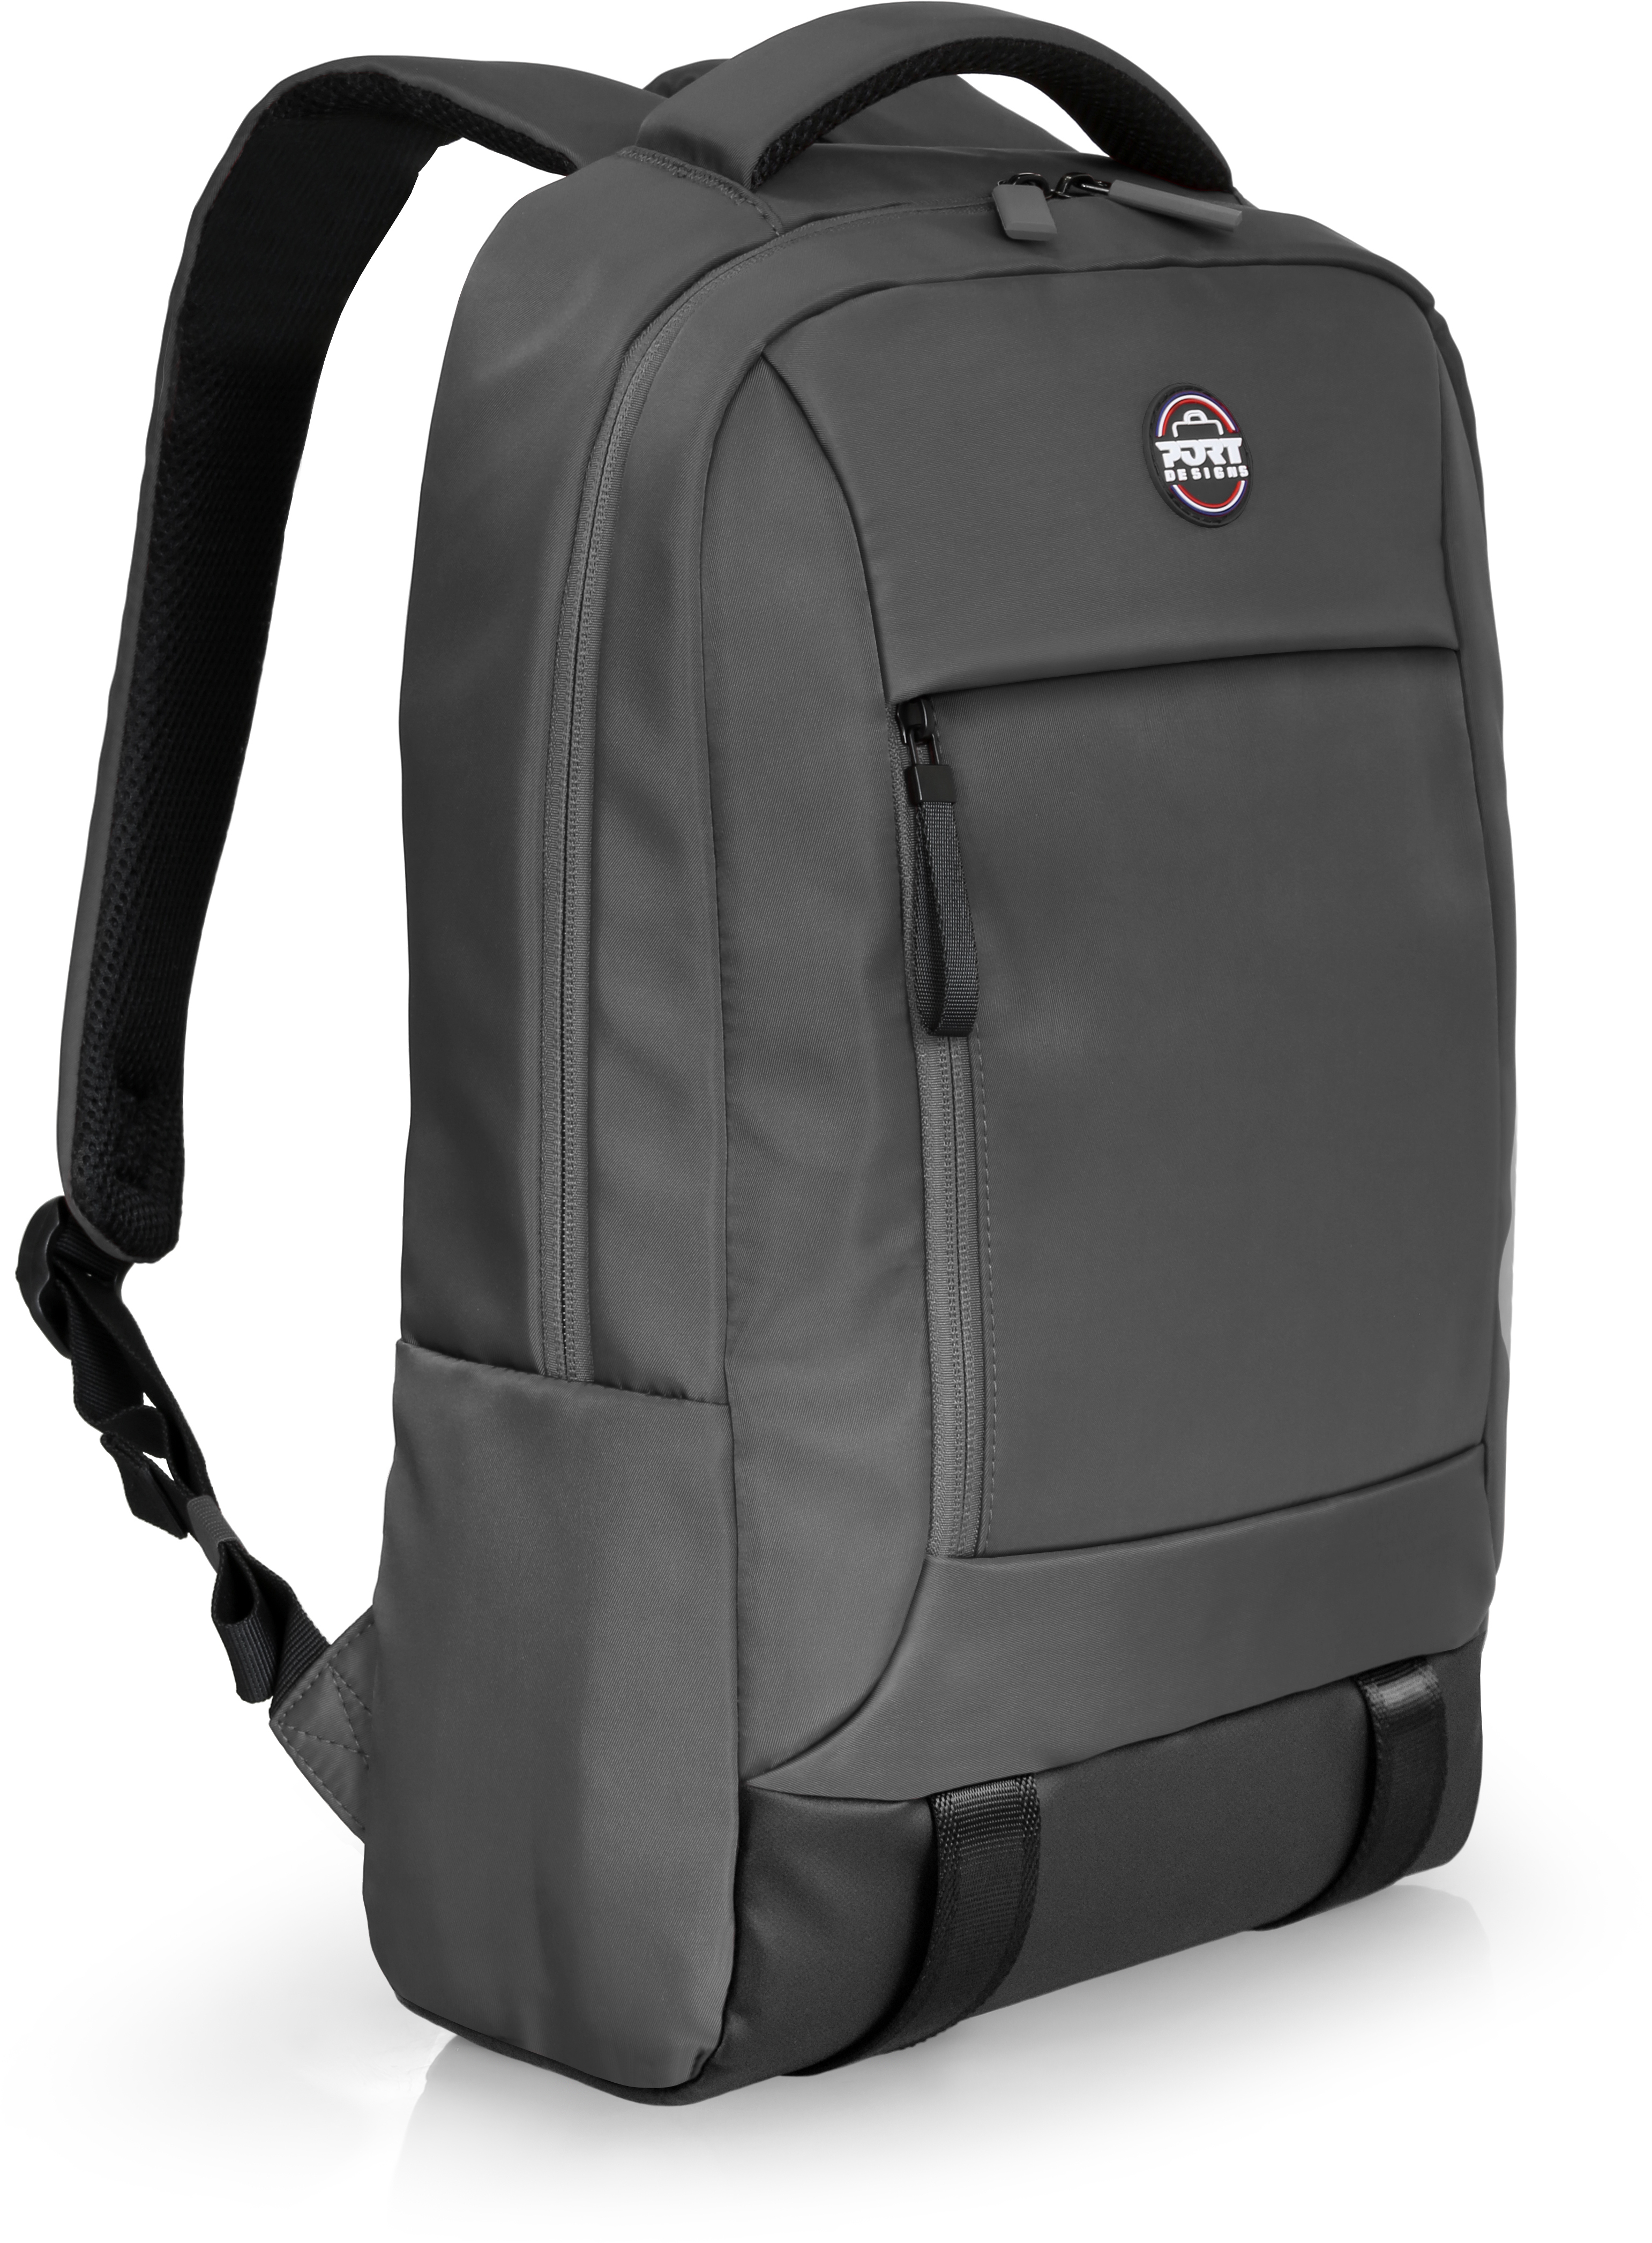 PORT Torino II Backpack 140426 15.6/16 Notebooks, Grey